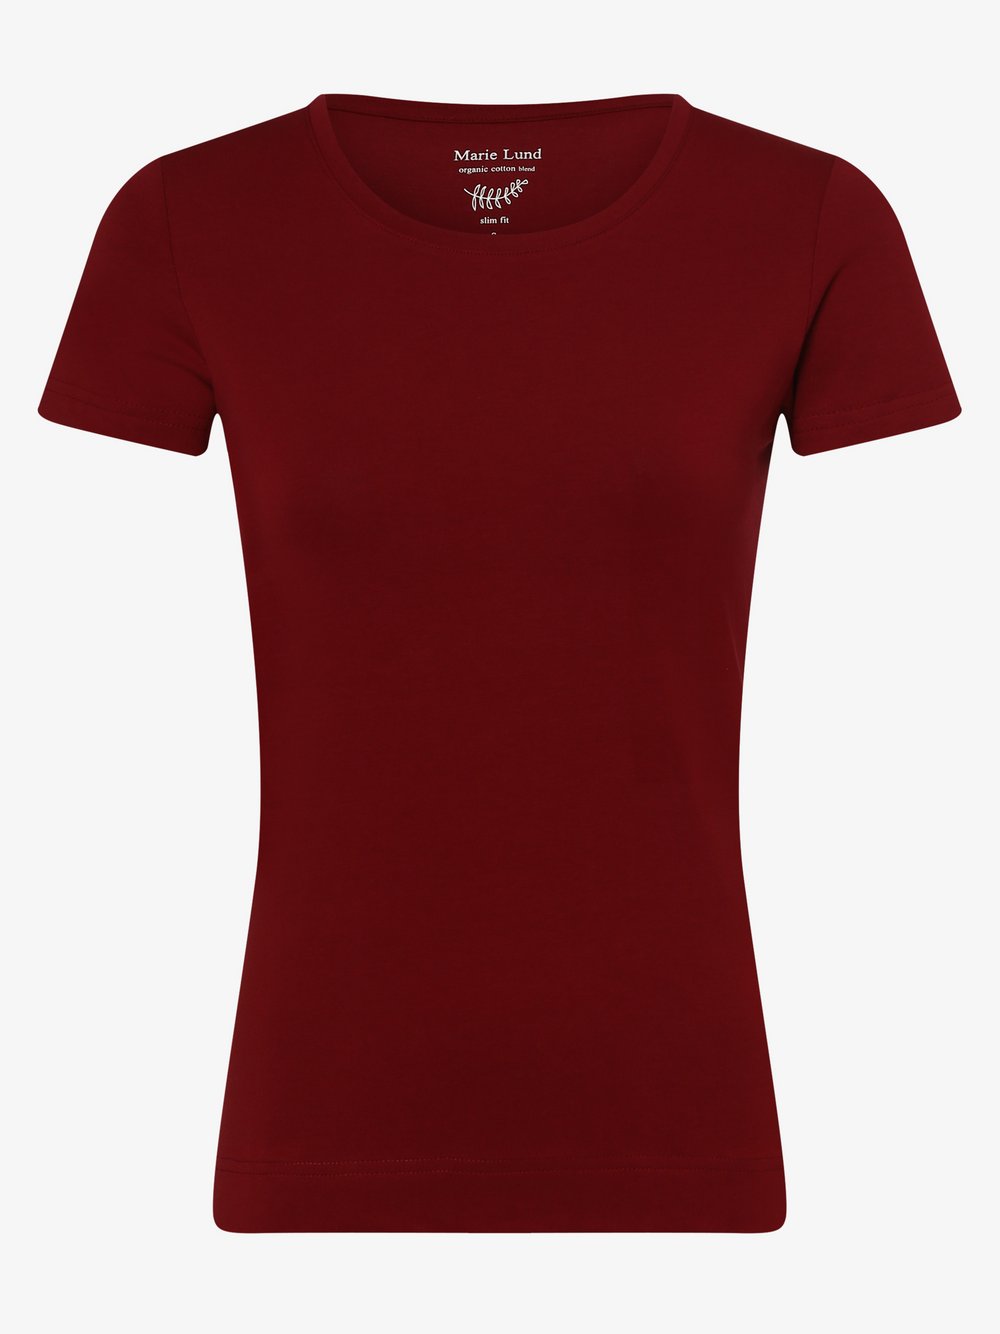 Marie Lund - T-shirt damski, czerwony